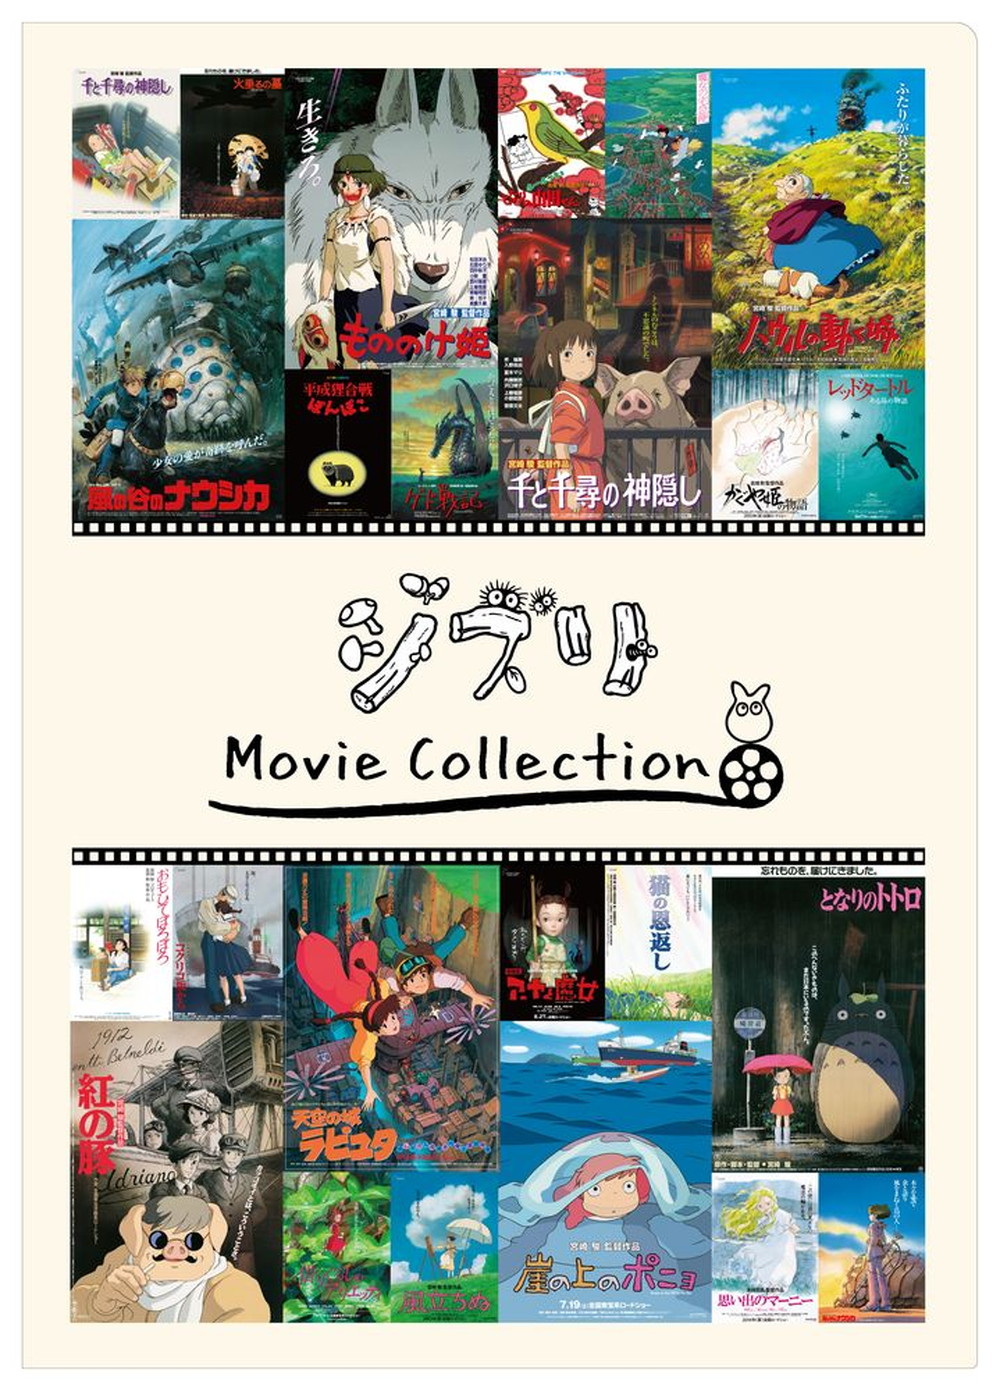 「ジブリ Movie Collection」